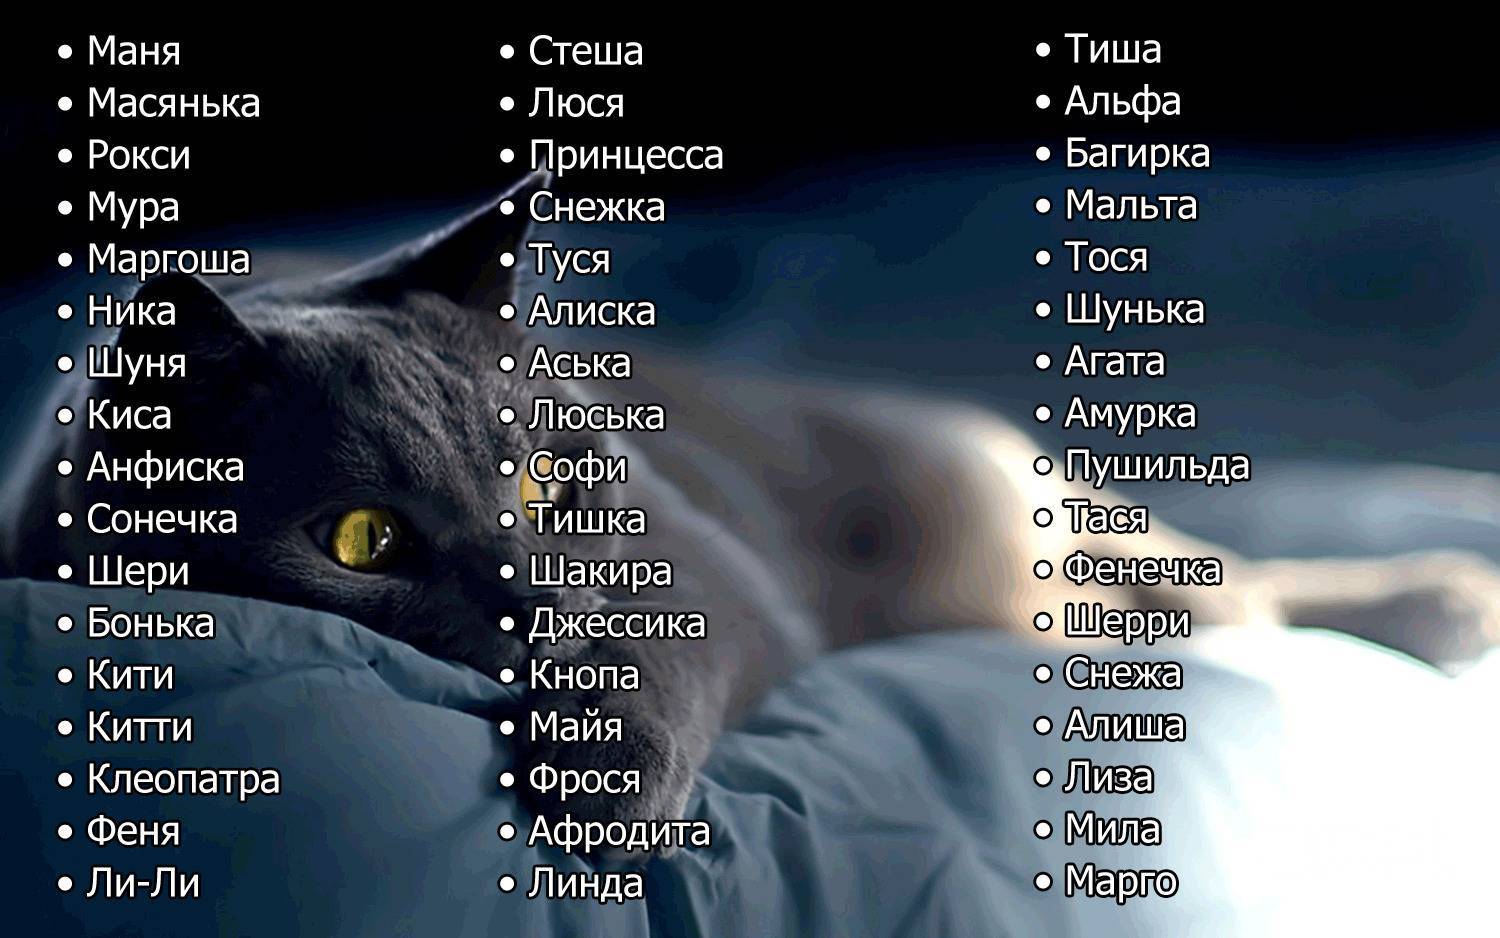 Имена и клички для кошек: как назвать котёнка девочку рыжего, чёрного, серого, белого или других окрасов